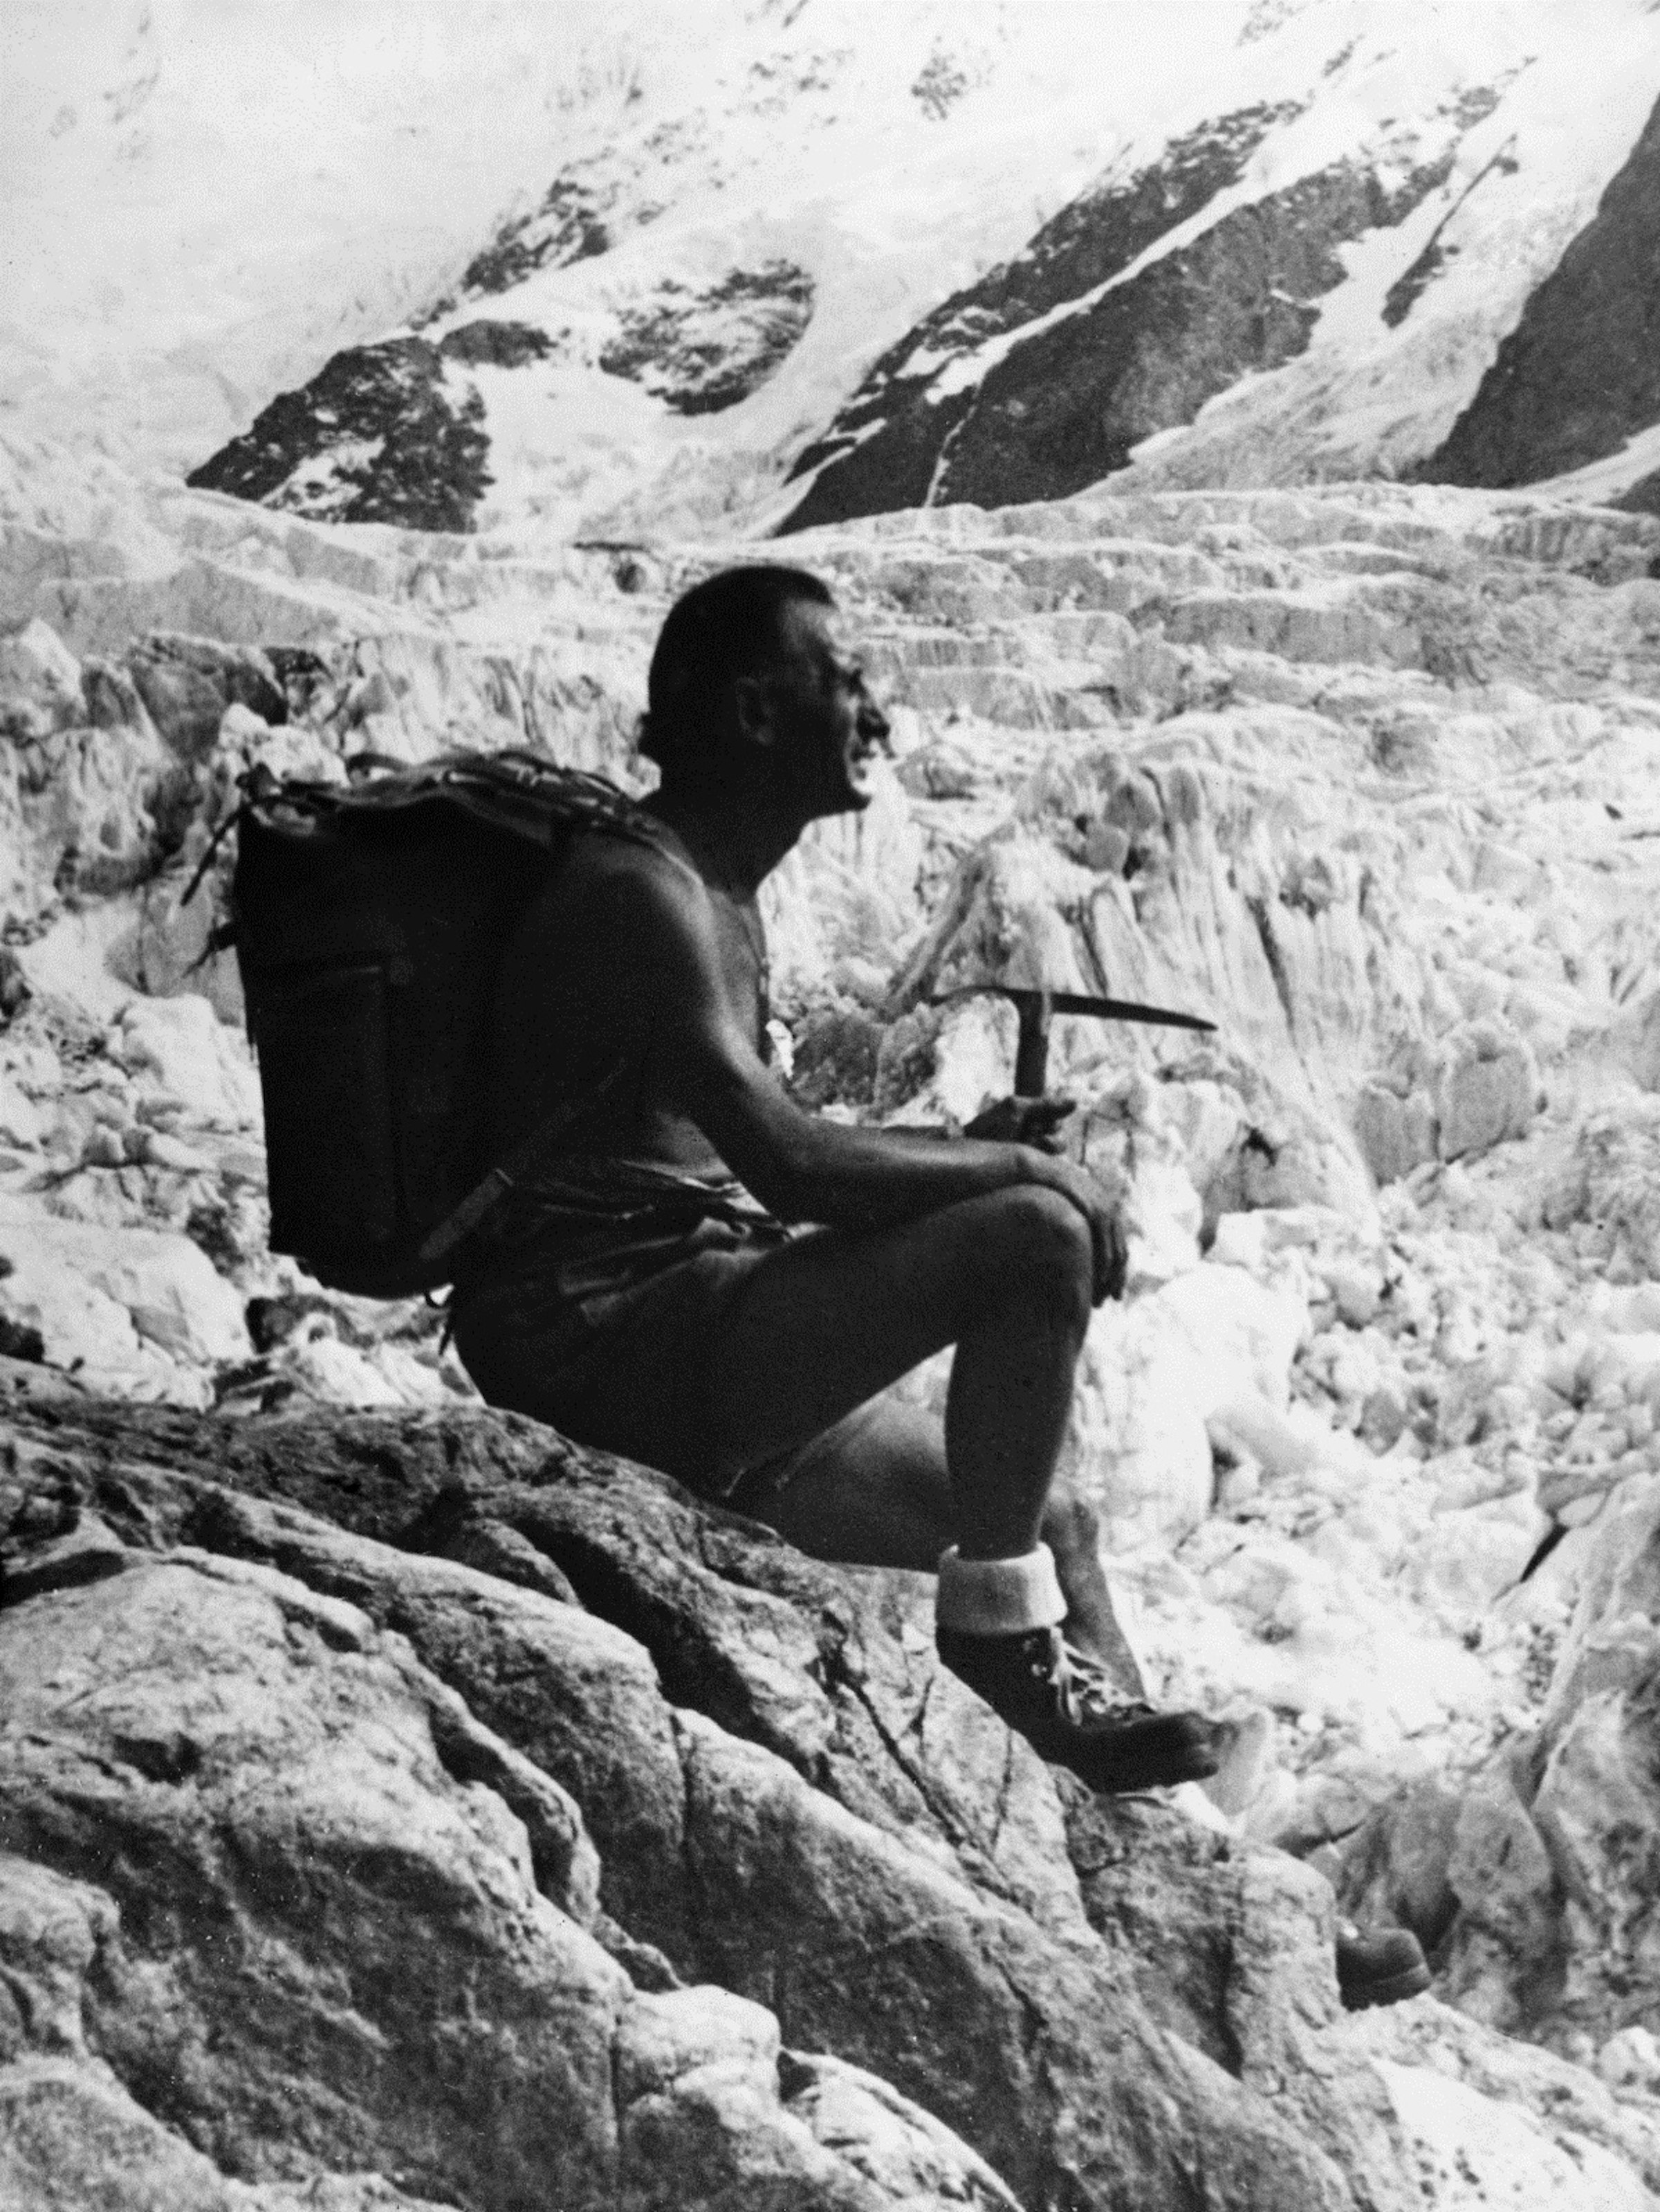 画像: 創業者のヴィターレ・ブラマーニ（Vitare Bramani）。登山家でもあった彼は、自分が作ったソールを履いて雪山に登るなど、そのパフォーマンスの検証を自ら行っていた。彼の名前から社名でもありブランド名でもある「Vibram」となった